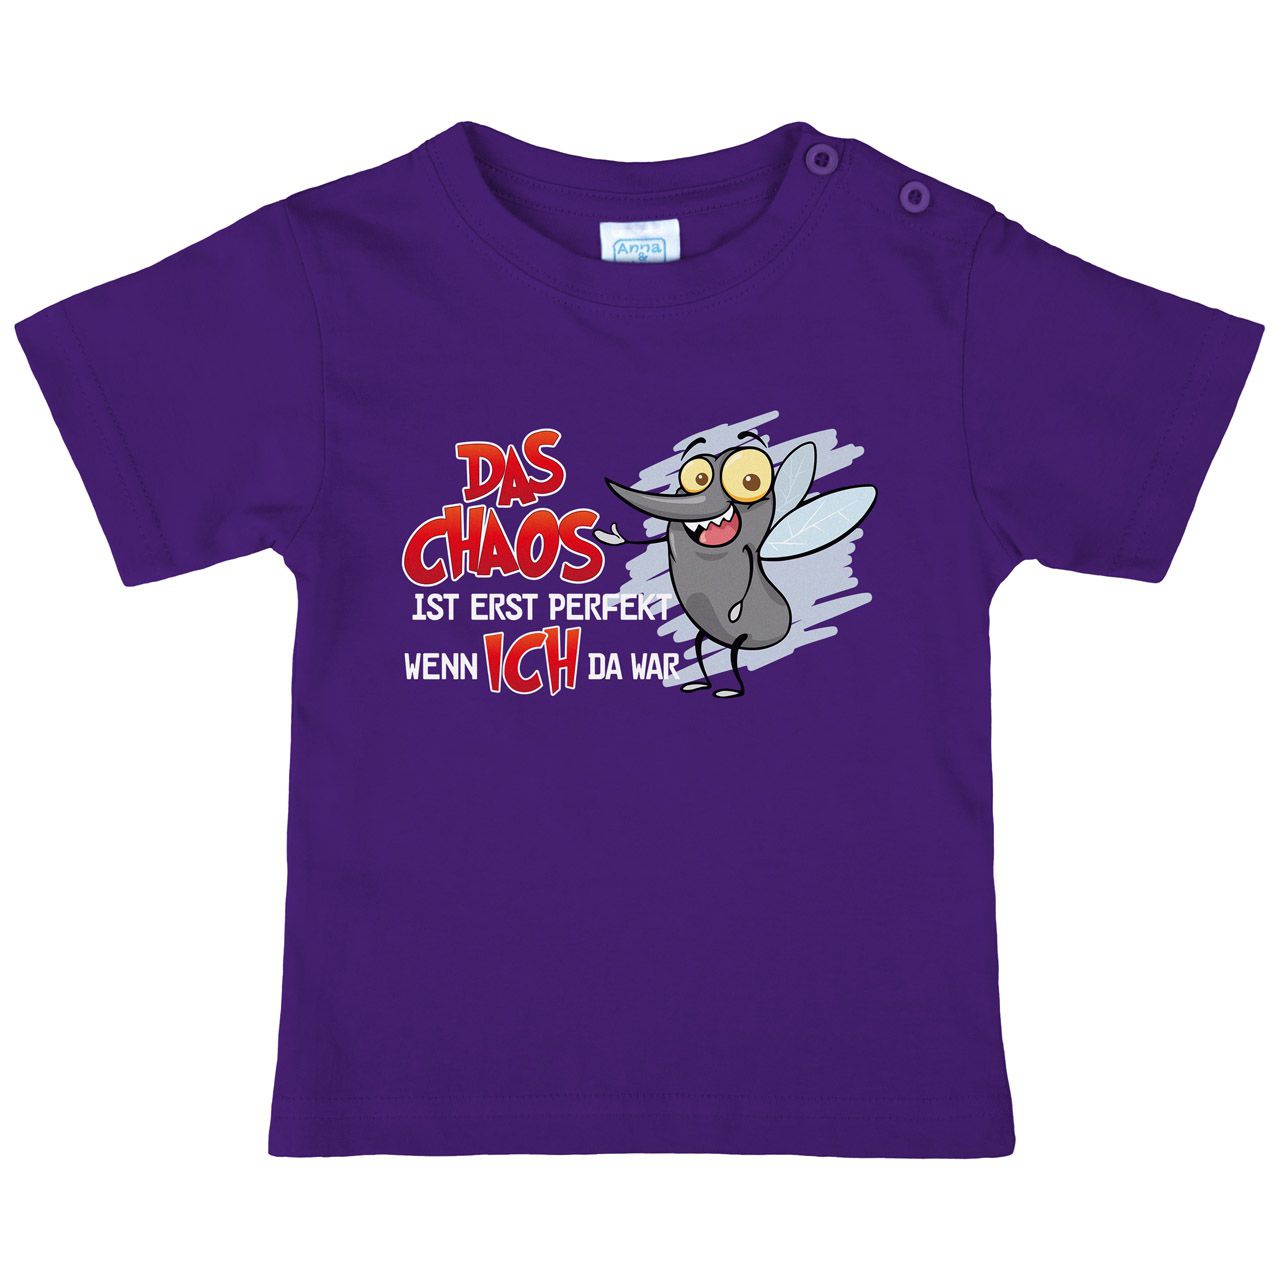 Das Chaos ist perfekt Kinder T-Shirt lila 80 / 86